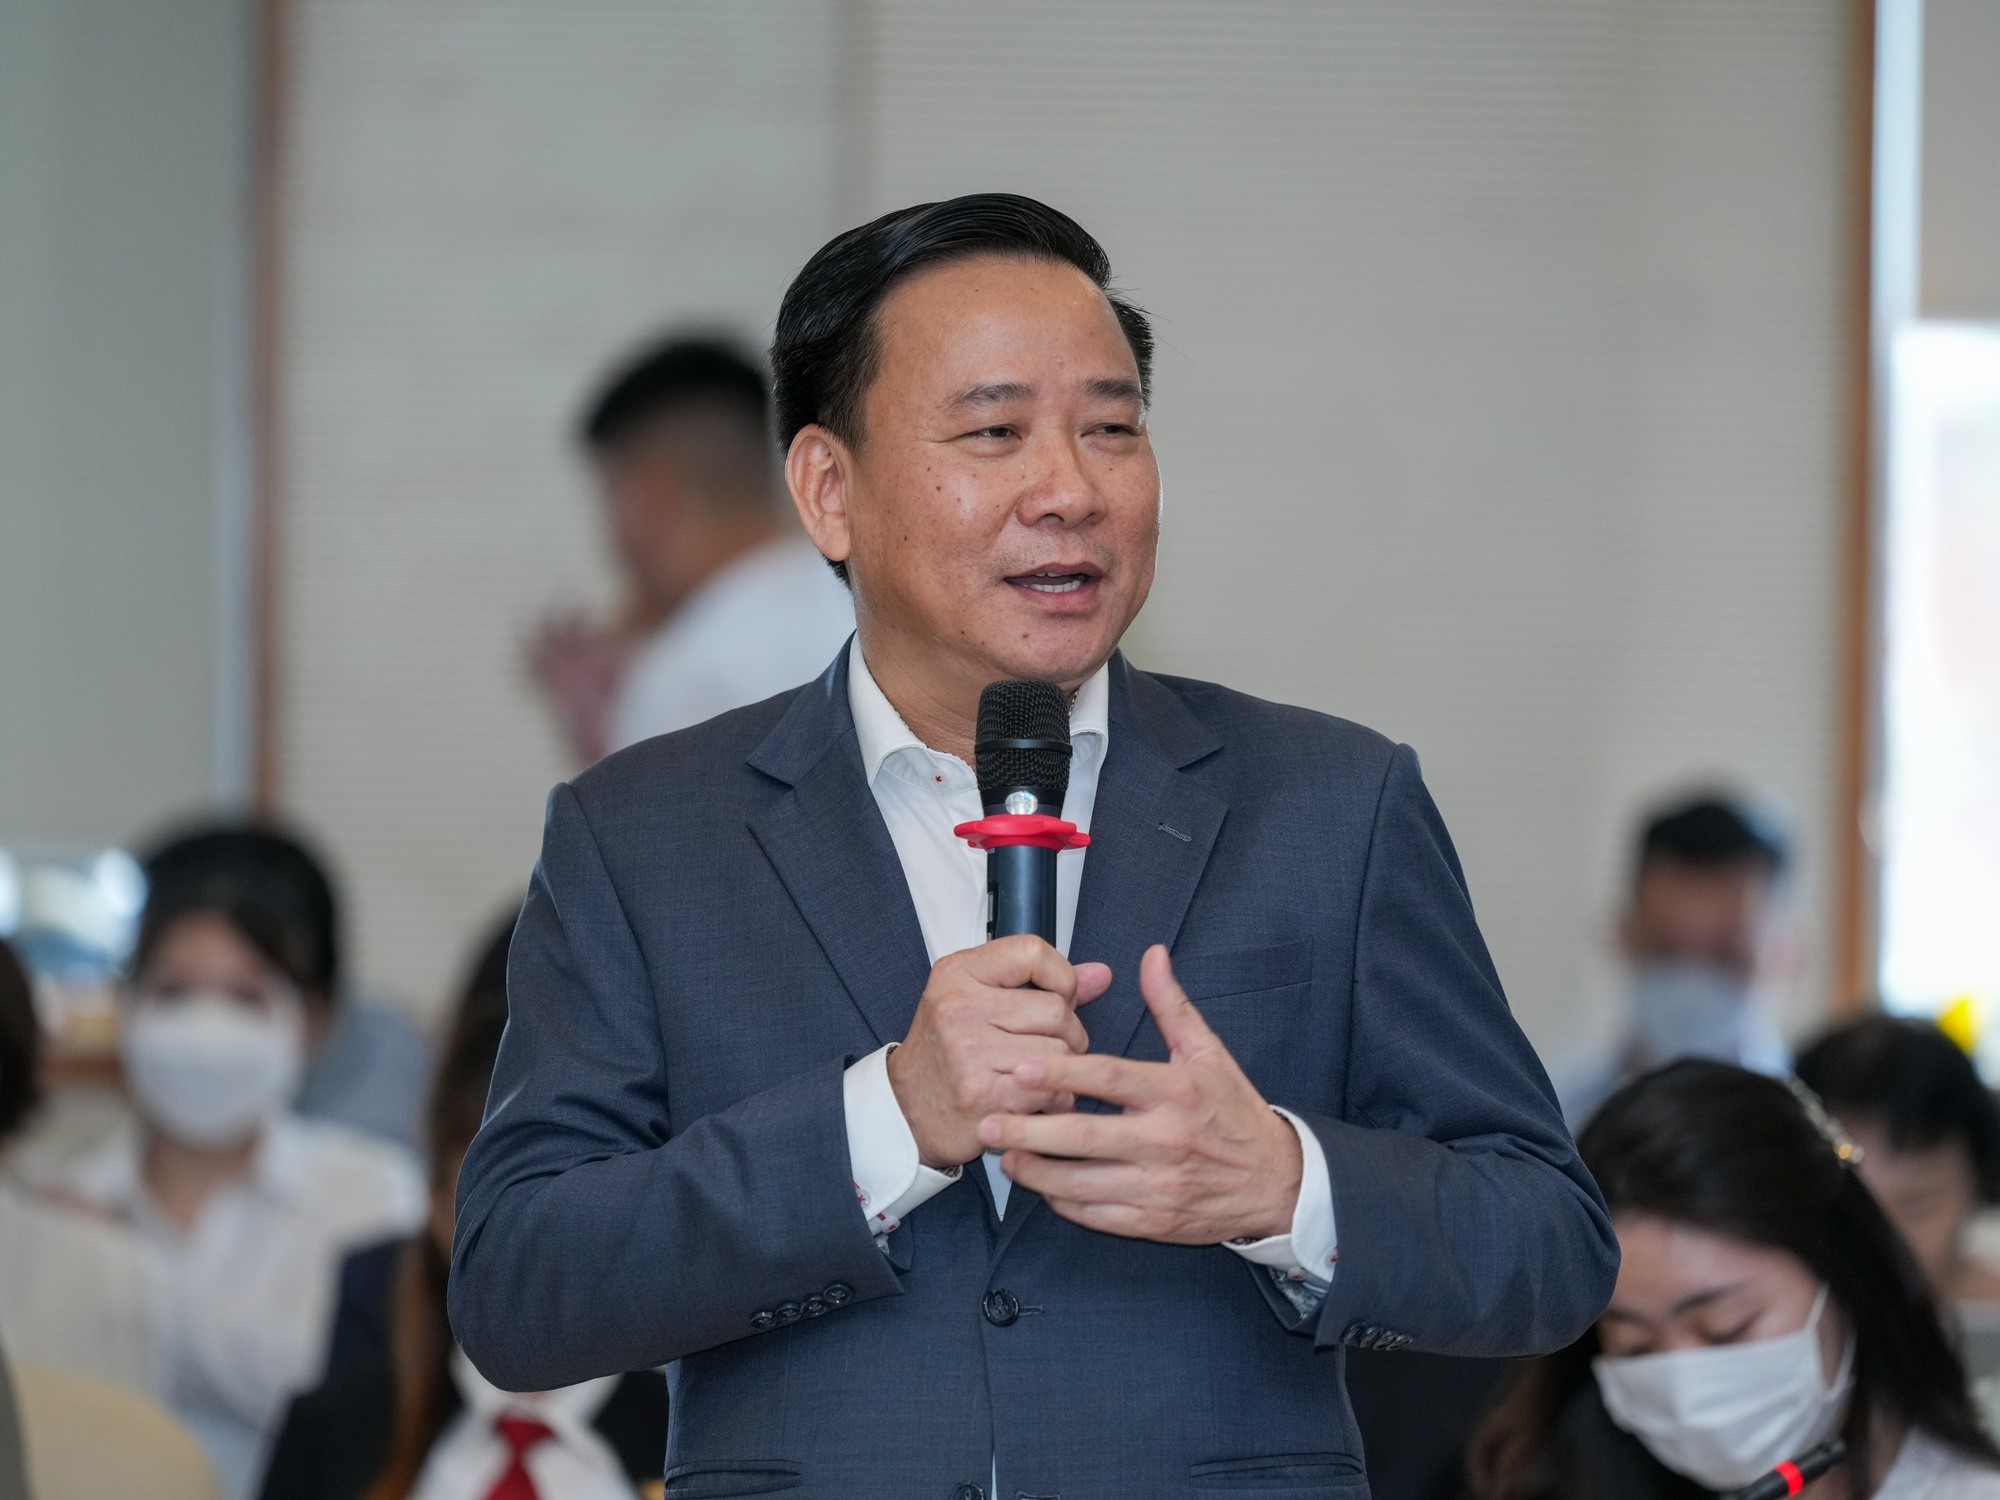 
Ông Trần Quốc Dũng - Phó Tổng giám đốc tập đoàn Hưng Thịnh.
